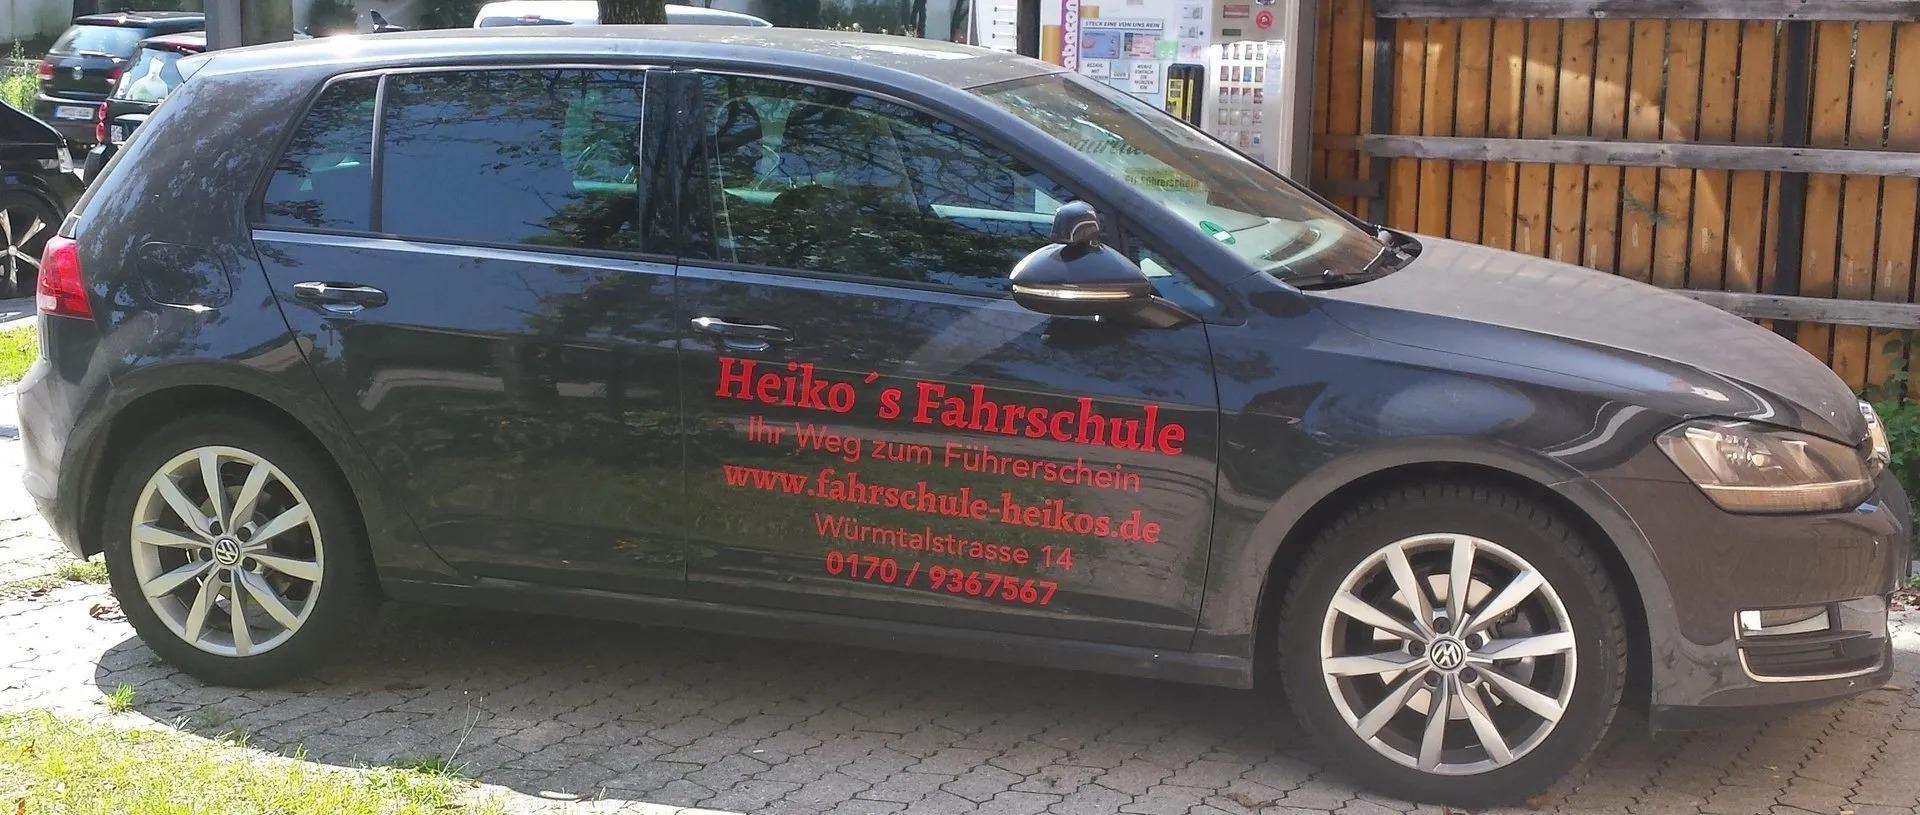 Fahrschulwagen  VW Golf VII Heikos Fahrschule München